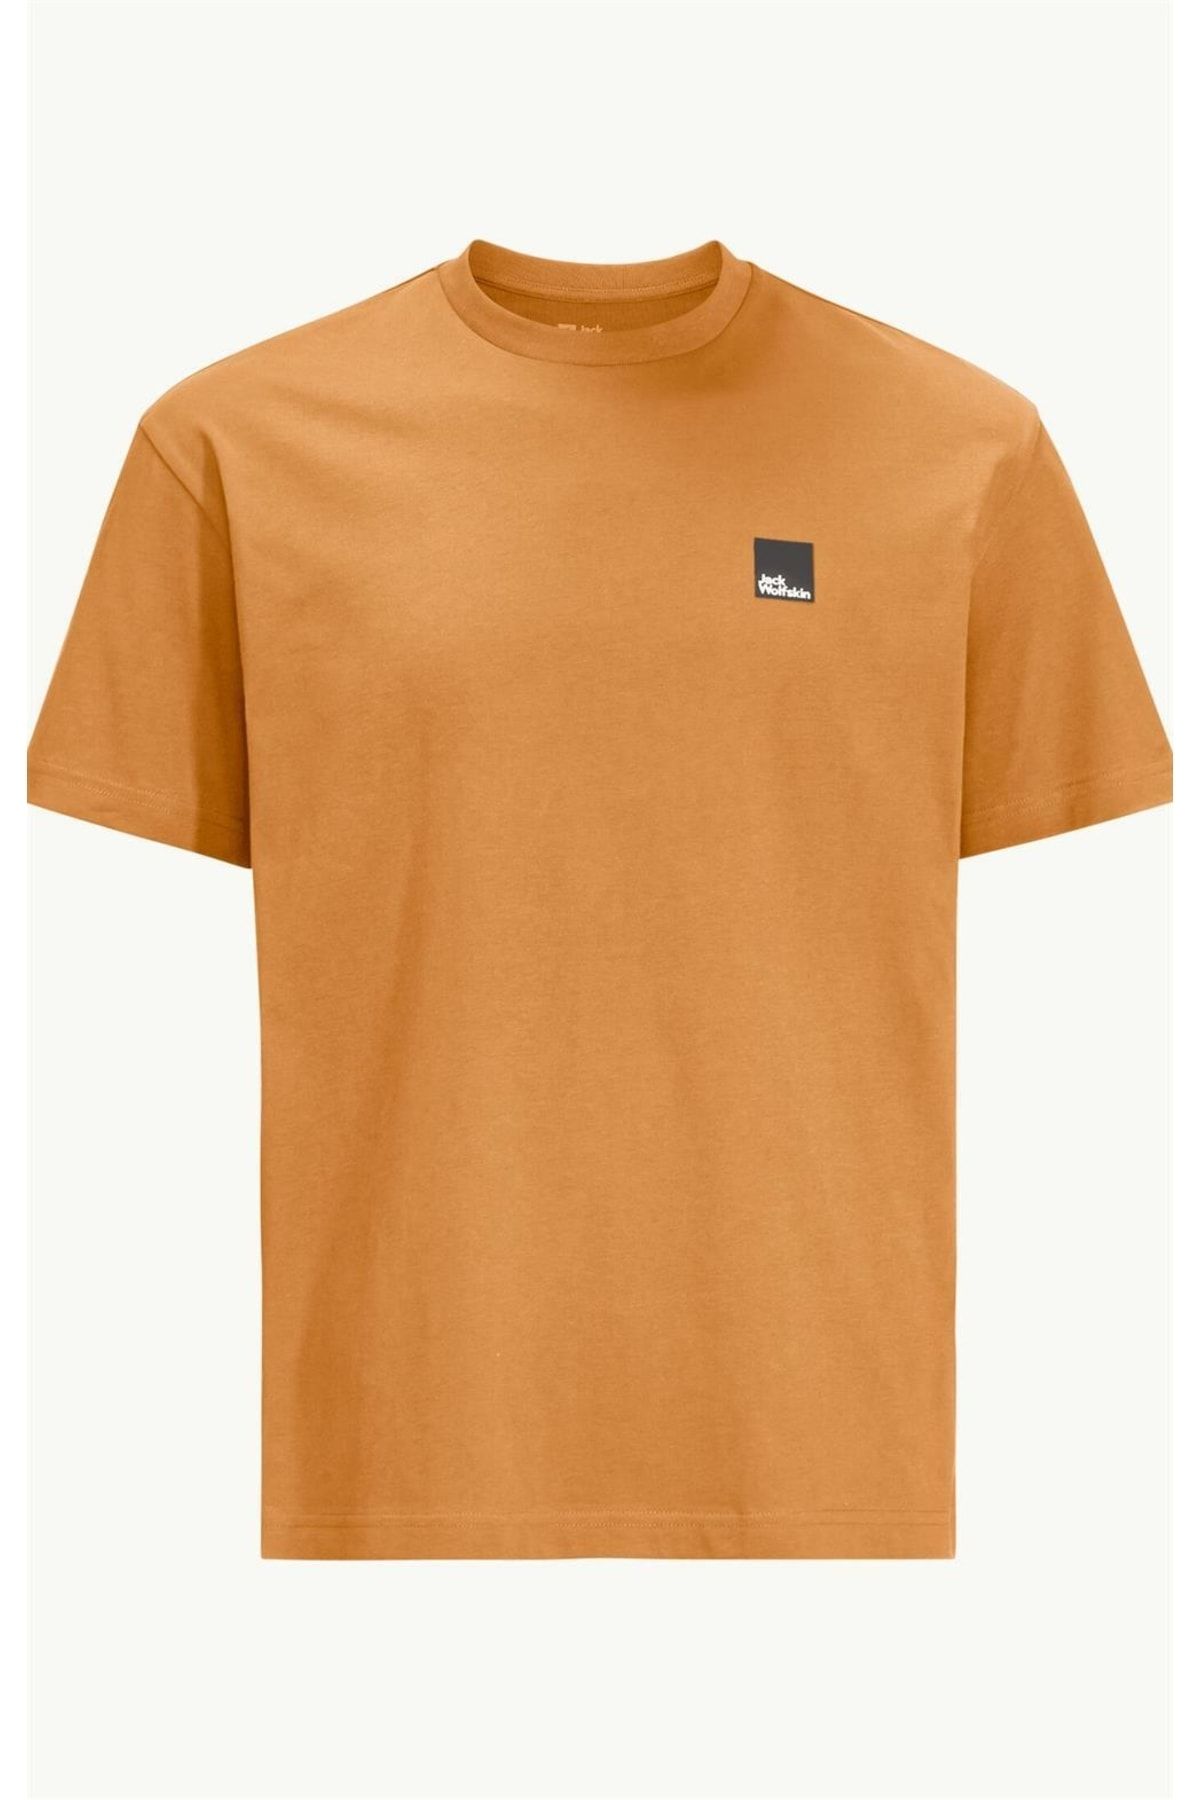 Jack Wolfskin Eschenheimer Unisex T-shirt Trendyol - Fiyatı, Yorumları